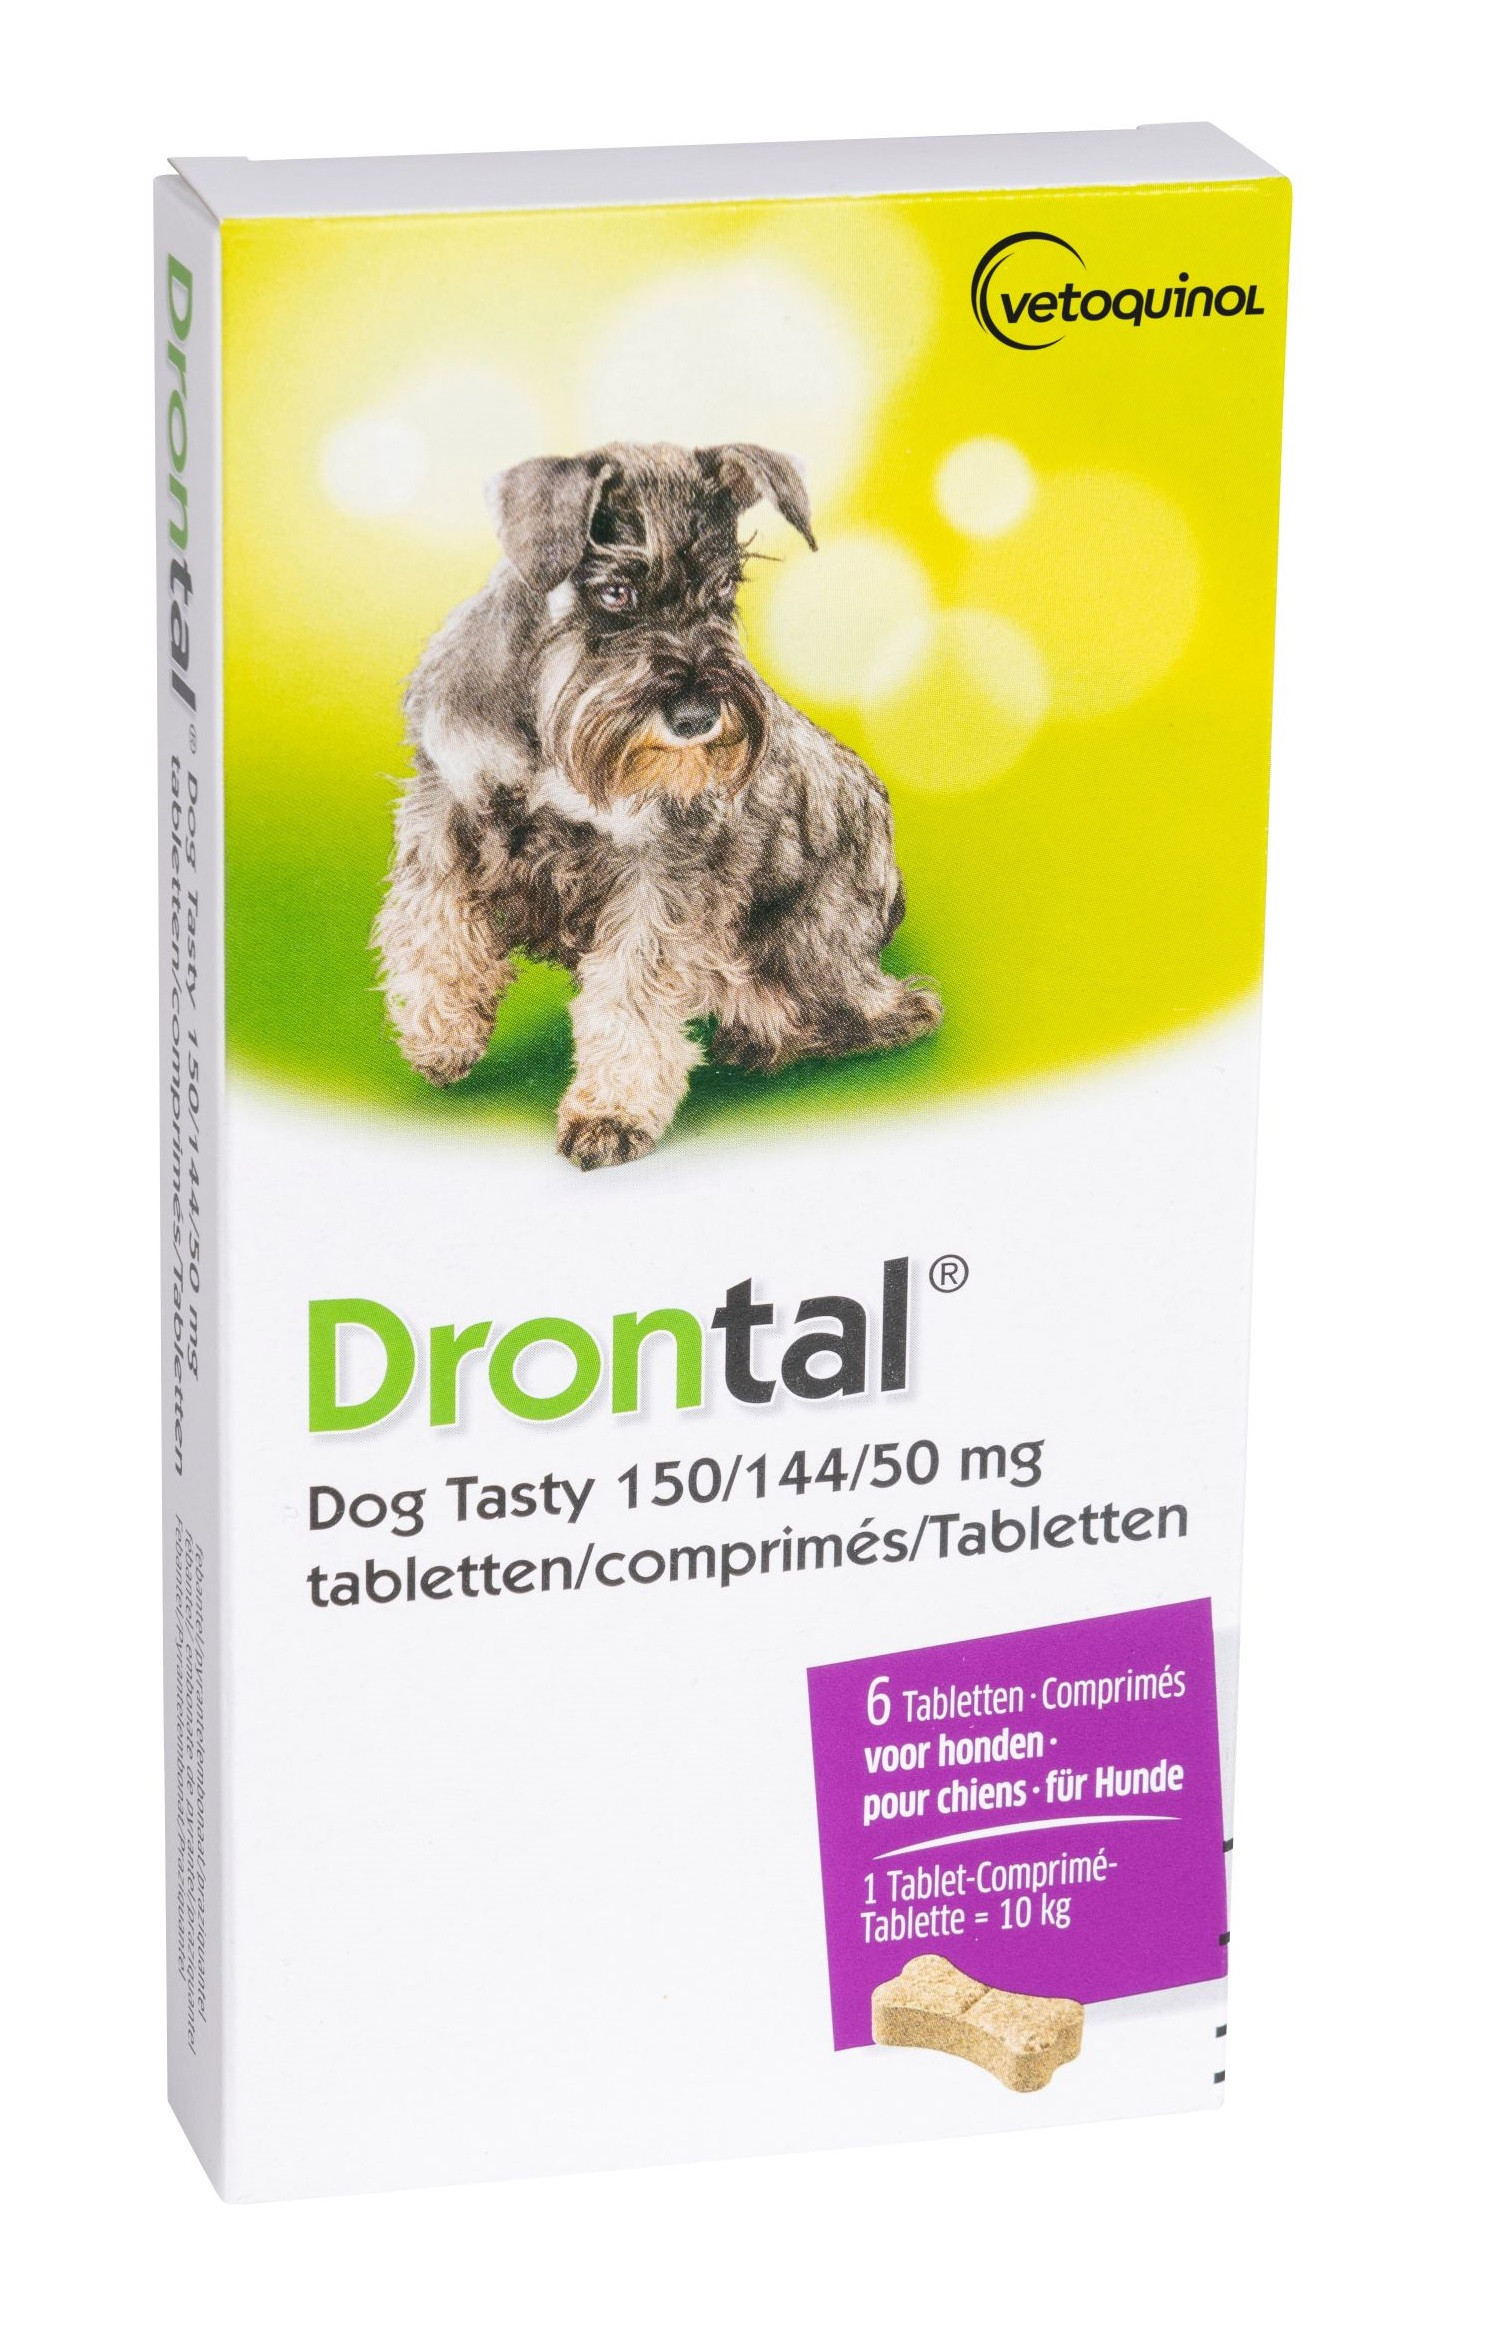 Drontal Dog Tasty 150/144/50 Entwurmungsmittel|Schnelle